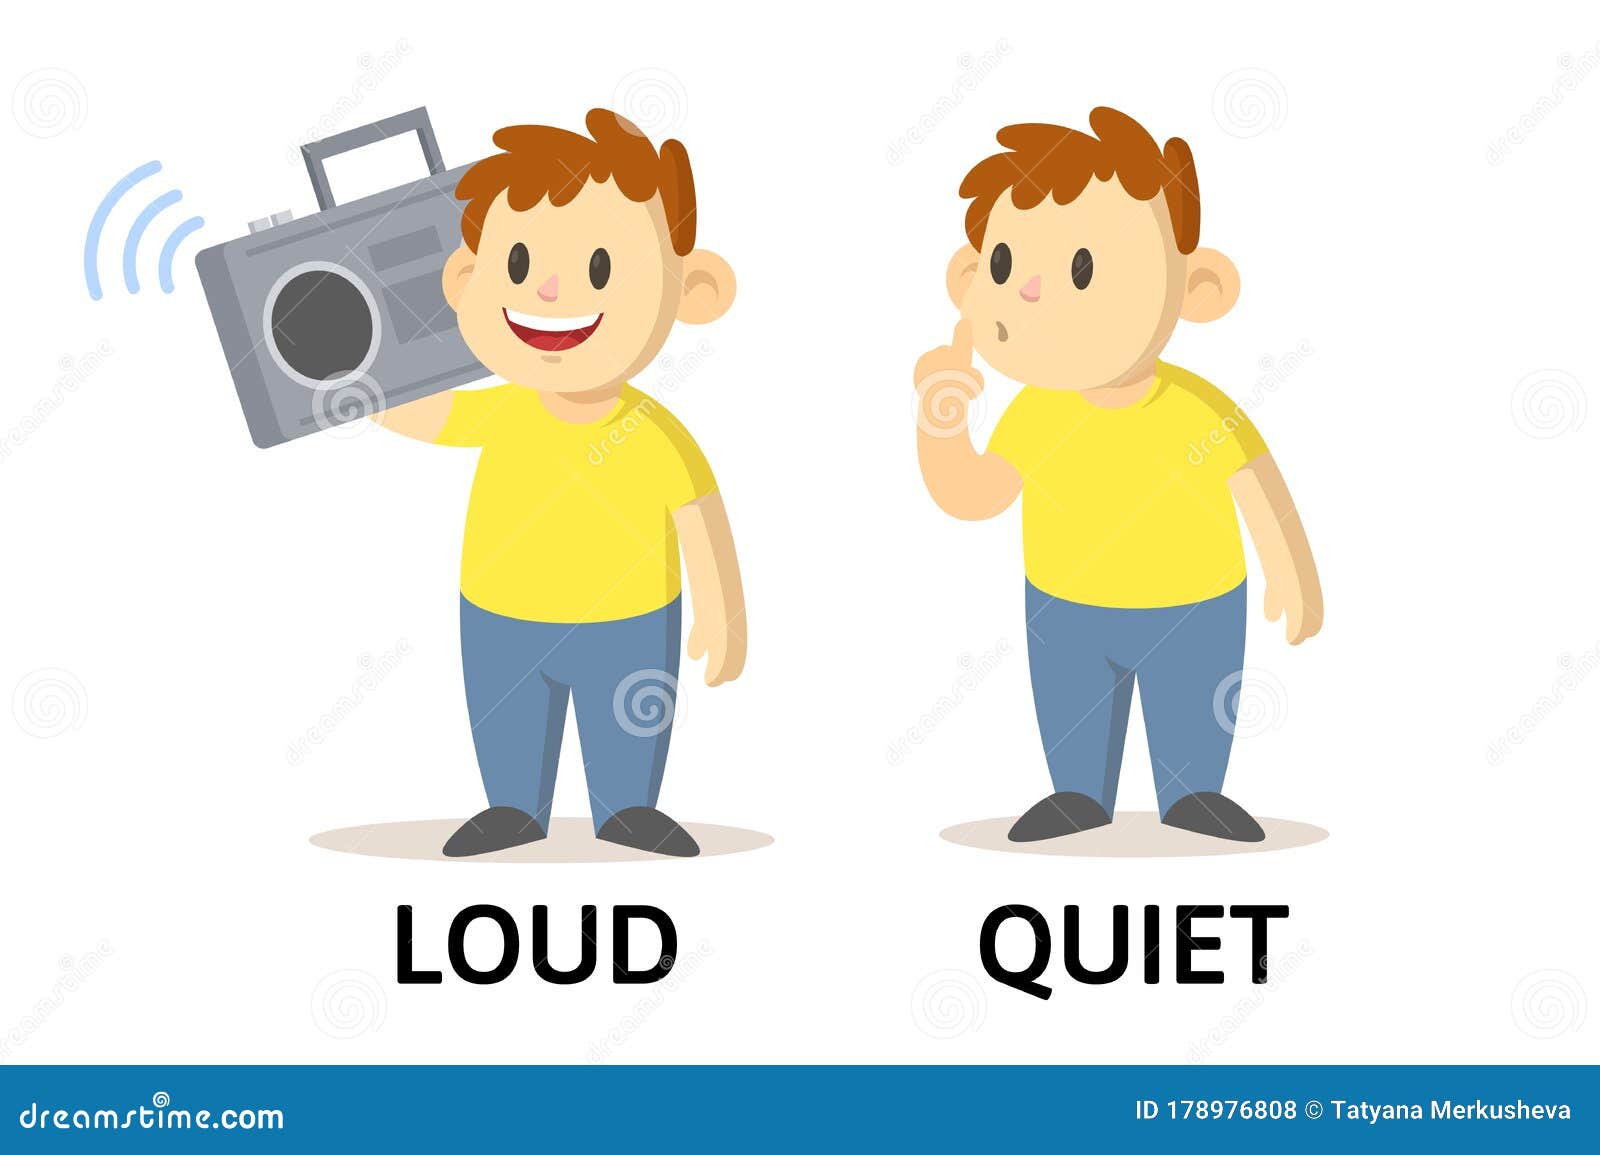 Adjectives noisy. Loud quiet. Громко карточка с изображением. Картинки для детей Loud quiet. Громко тихо карточки.